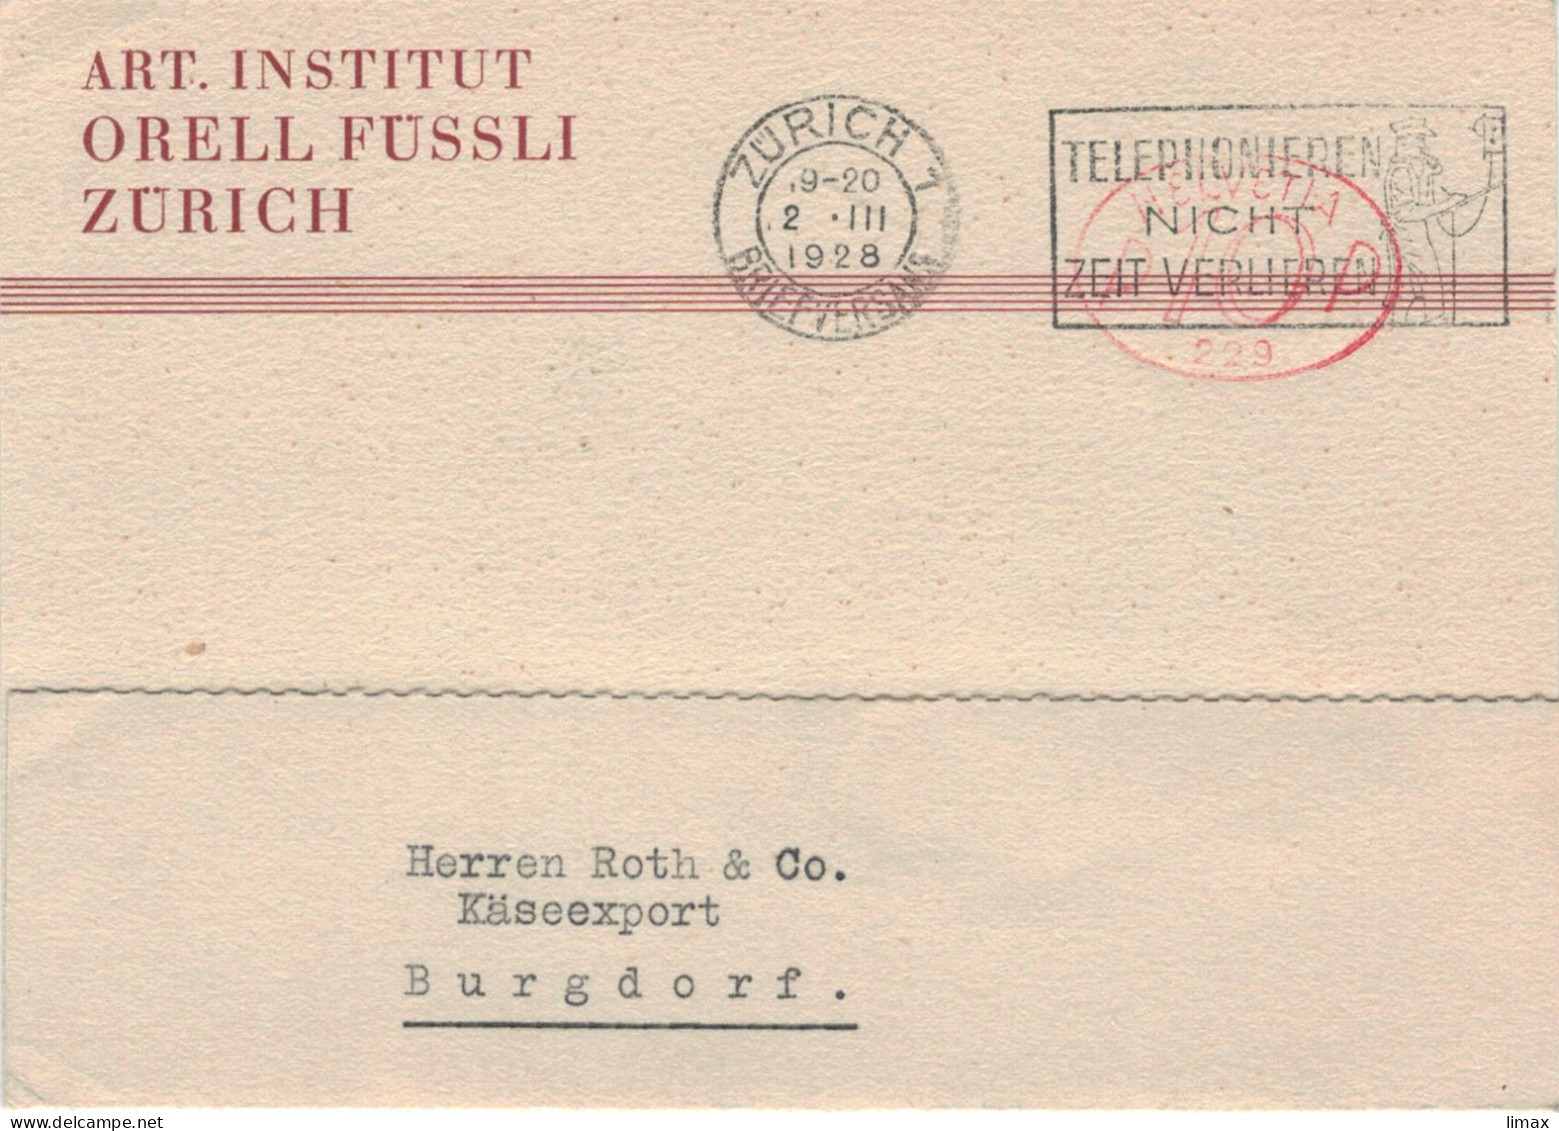 Art. Institut Orell Füssli Zürich Briefversand 1928 Hasler-Stempel No 229 - Telefonieren Nicht Zeit Verlieren > Burgdorf - Frankiermaschinen (FraMA)